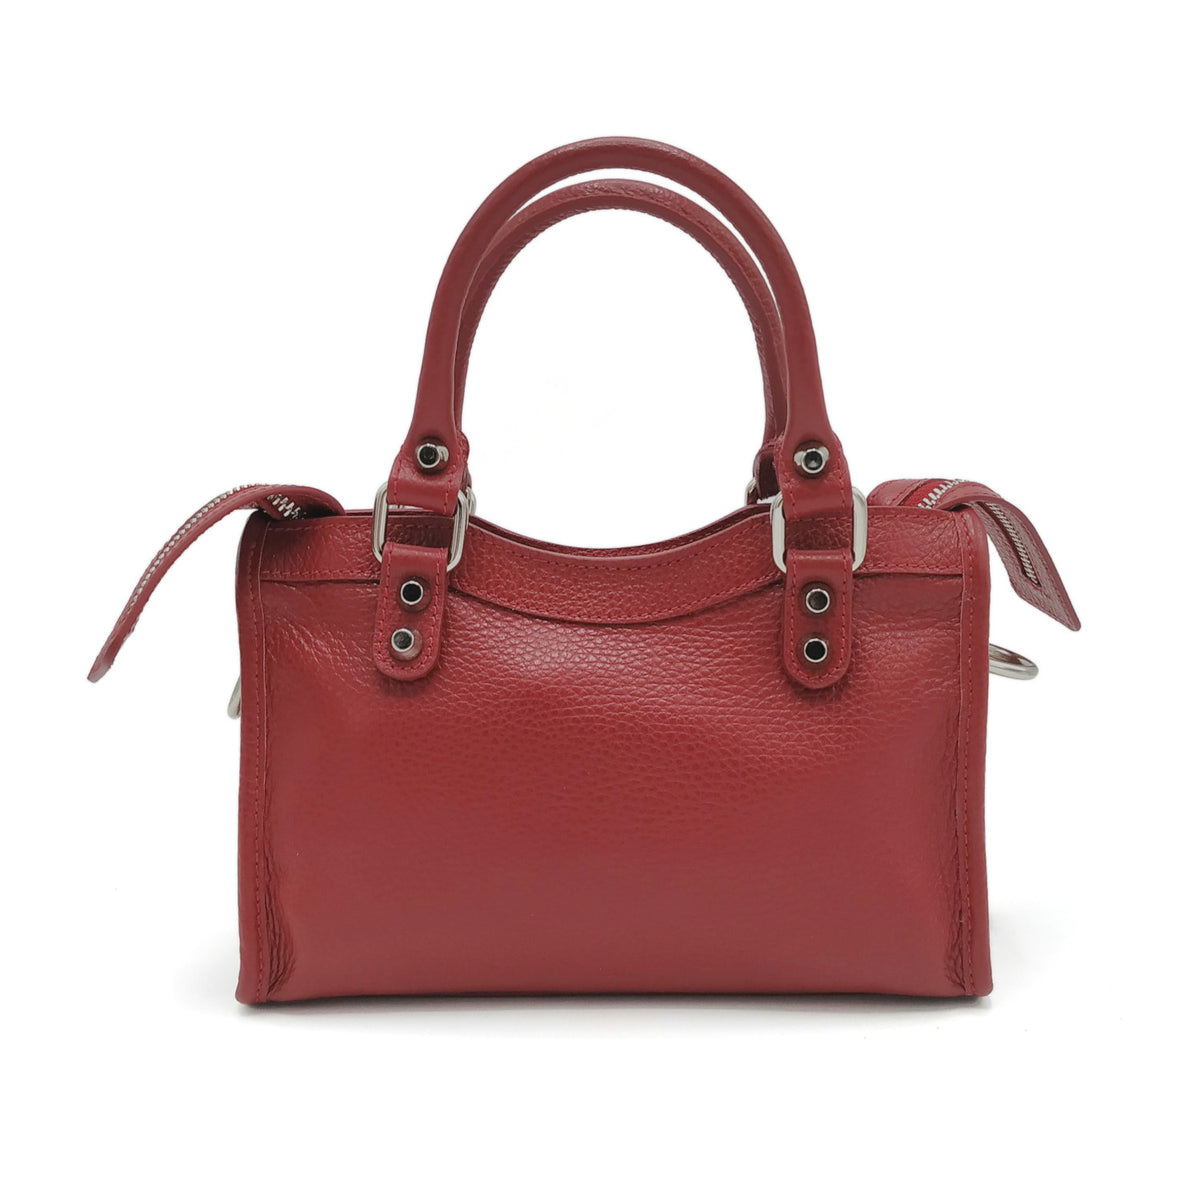 Tumbled genuine leather handbag art. 112273